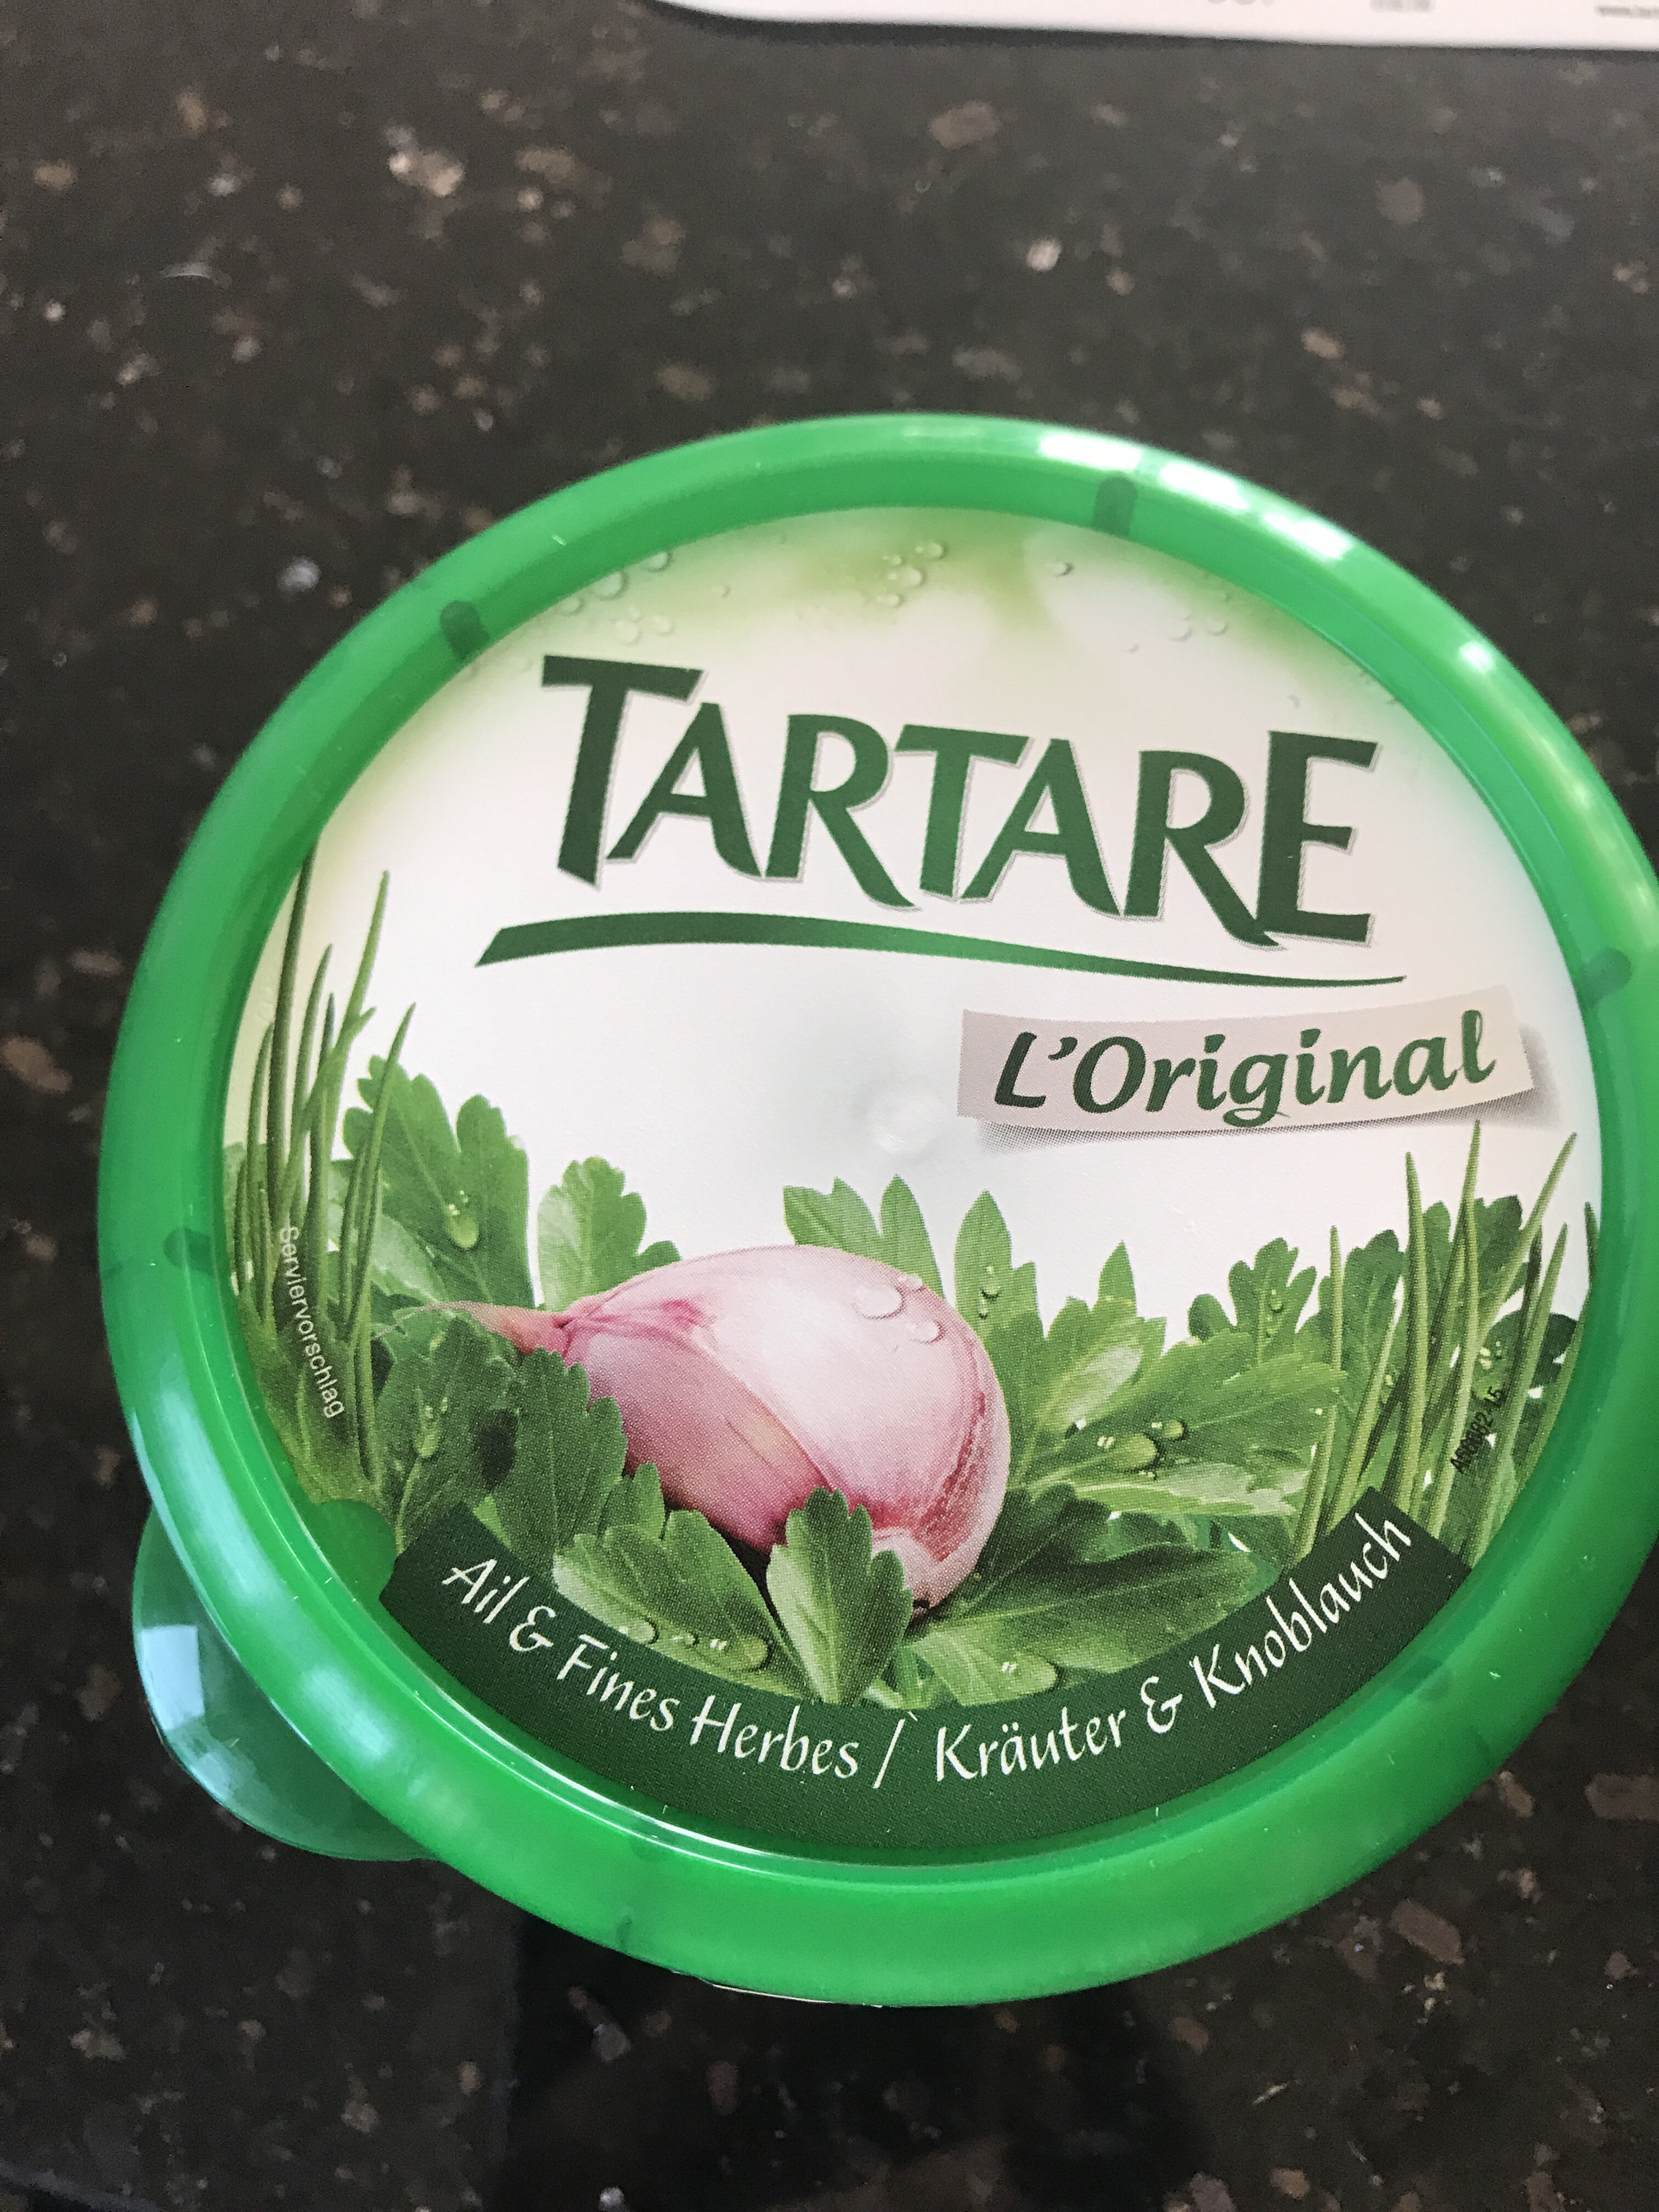 Tartare Ail et Fines Herbes - Produit